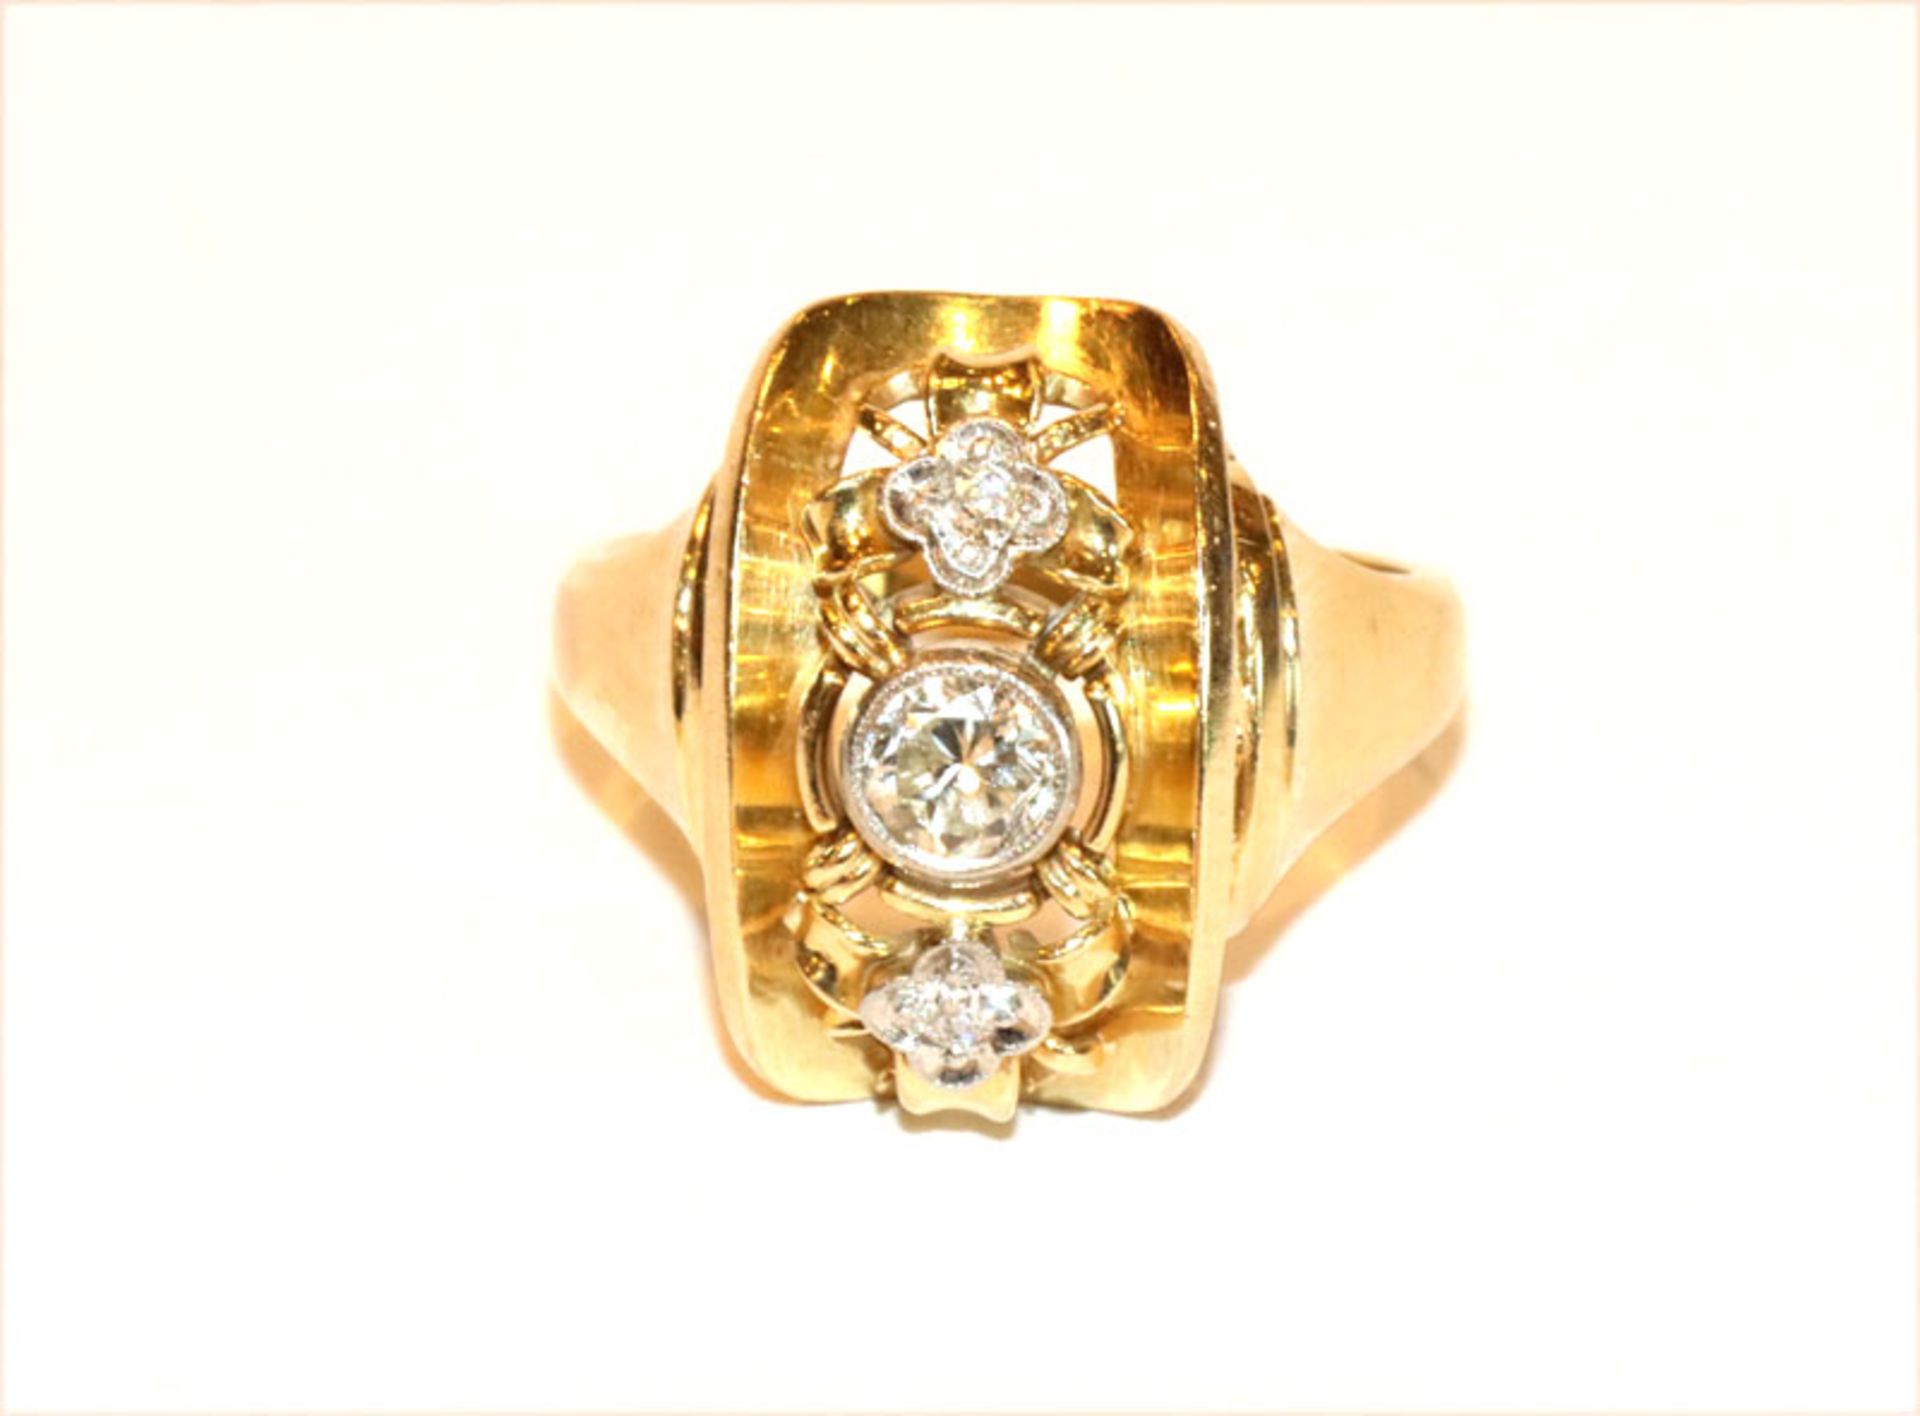 Dekorativer 14 k Gelbgold Ring mit 3 in Weißgold gefaßten Diamanten, ca. 0,25 ct., Gr. 55, 6,6